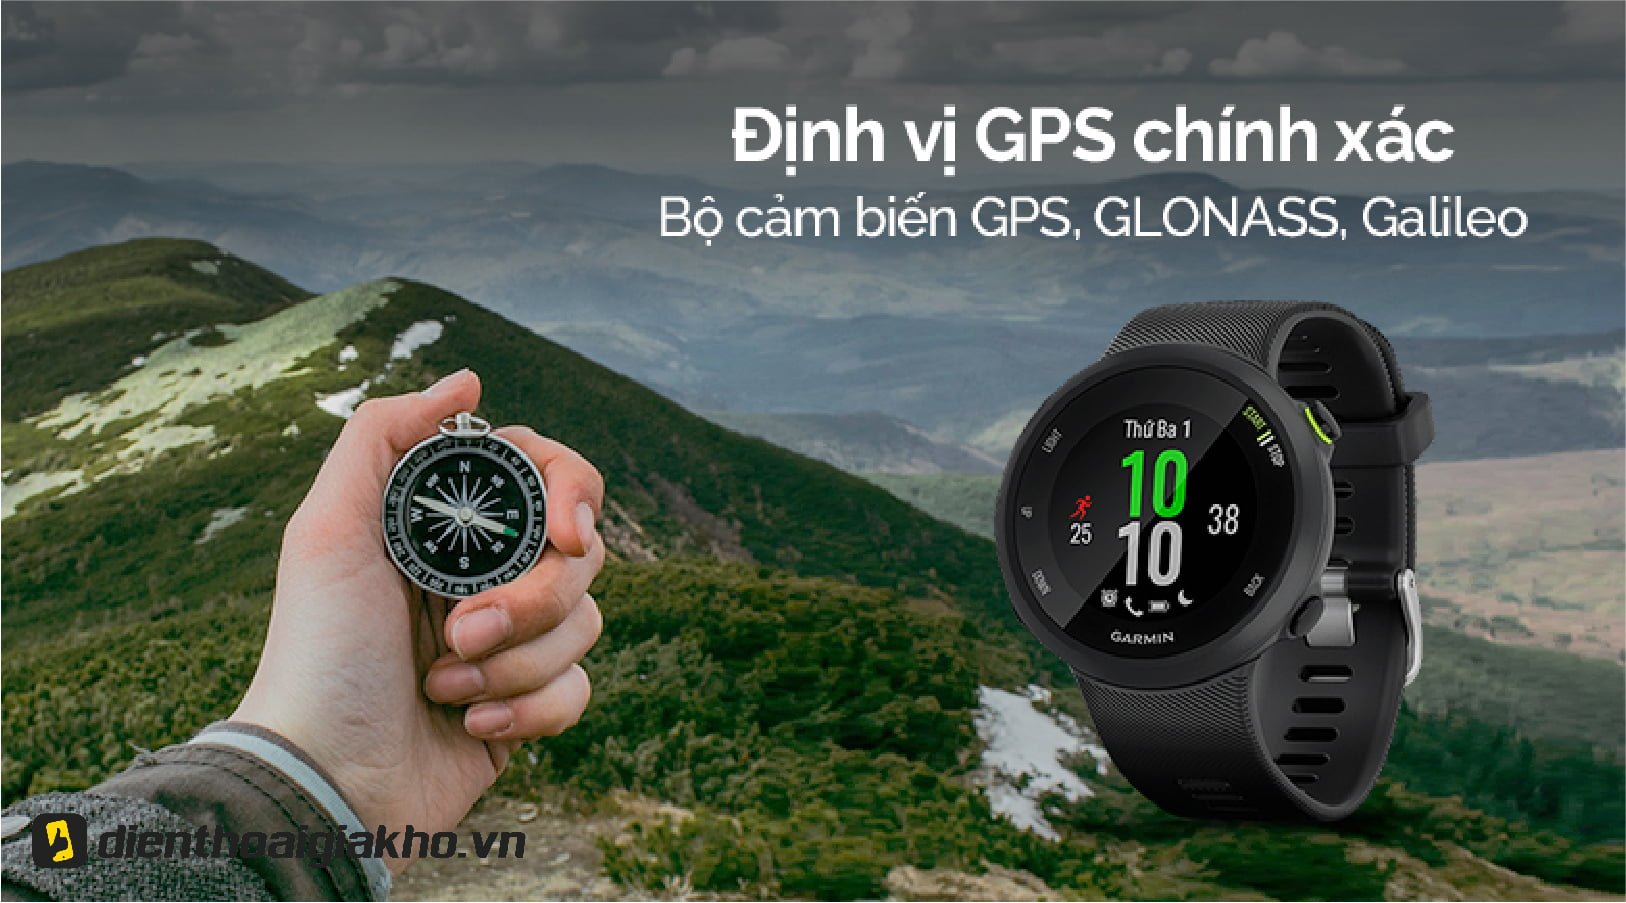 Garmin Watch Forerunner 45 GPS có khả năng định vị chính xác